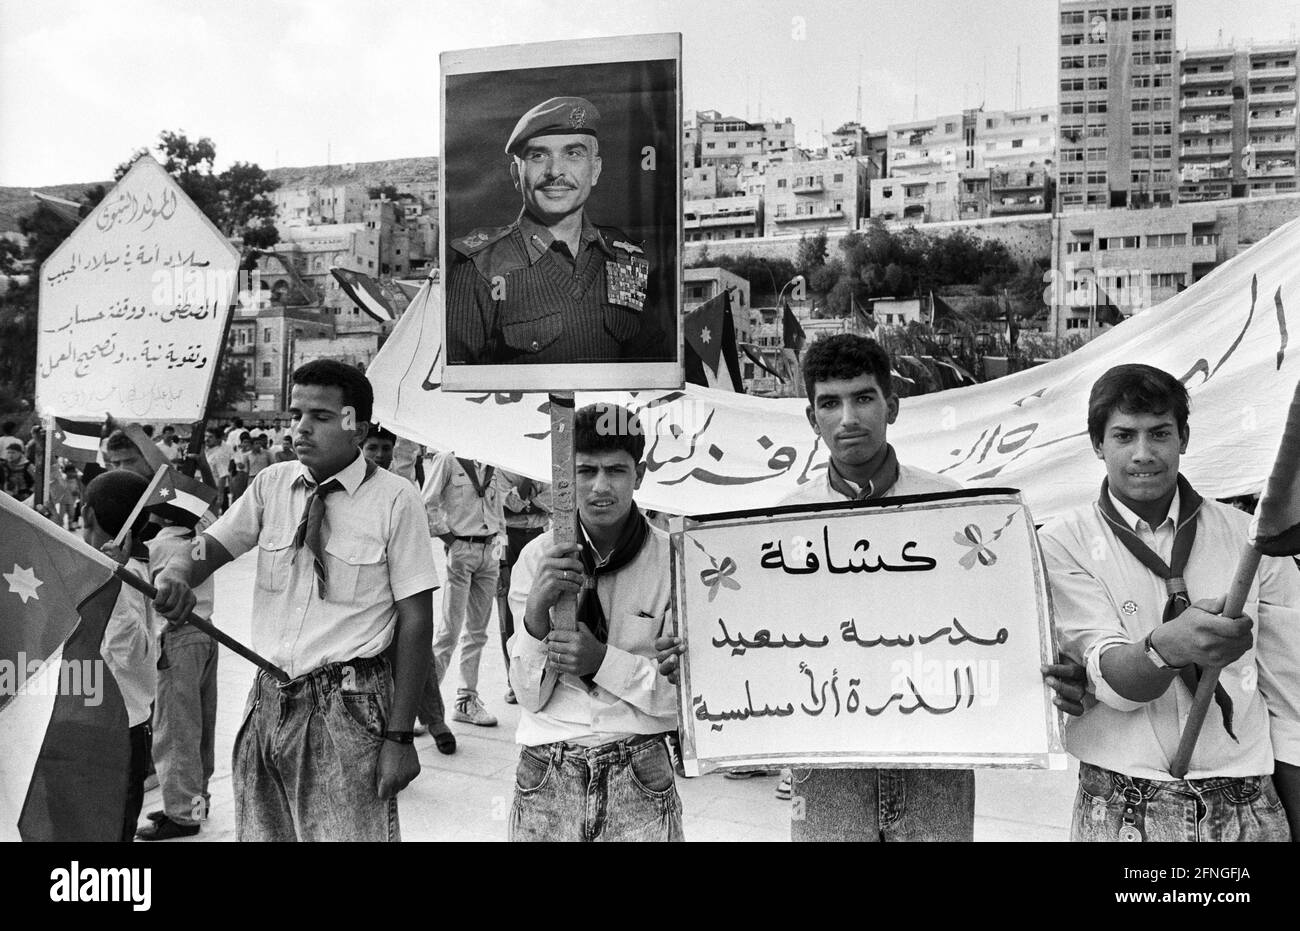 Jordanie, Amman 01.10.1990 No. D'archive: 20-60-35 Stadtfotos Amman photo: Manifestation contre les Etats-Unis avec photo du Roi Hussein Bin Talal [traduction automatique] Banque D'Images